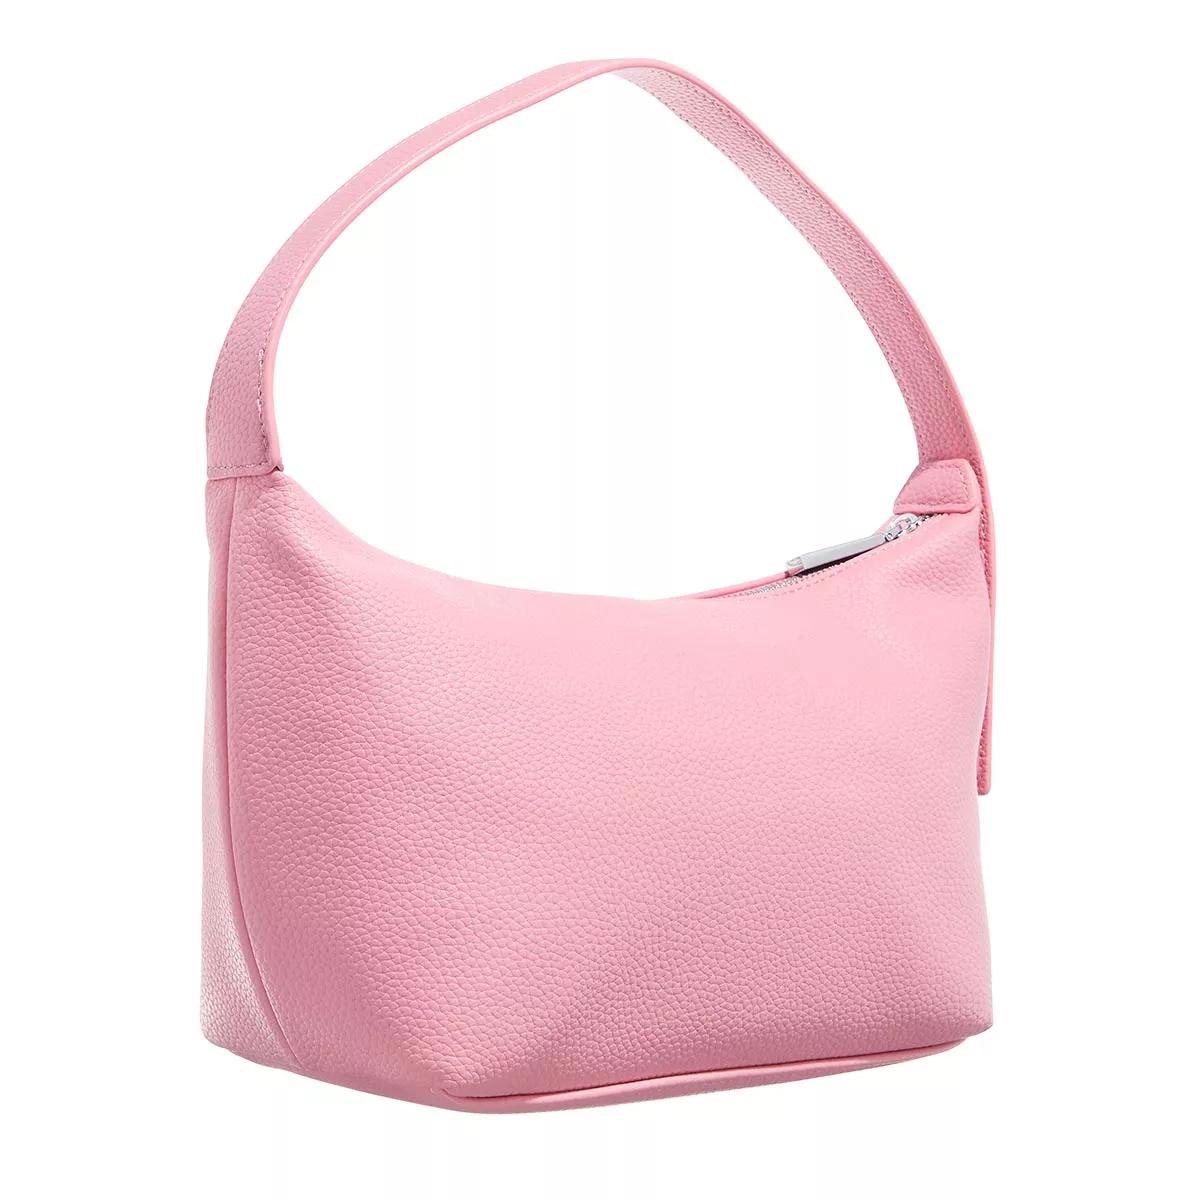 Chiara Ferragni Hobo bags Range E Eye Star Lock Sketch 03 Bags in roze